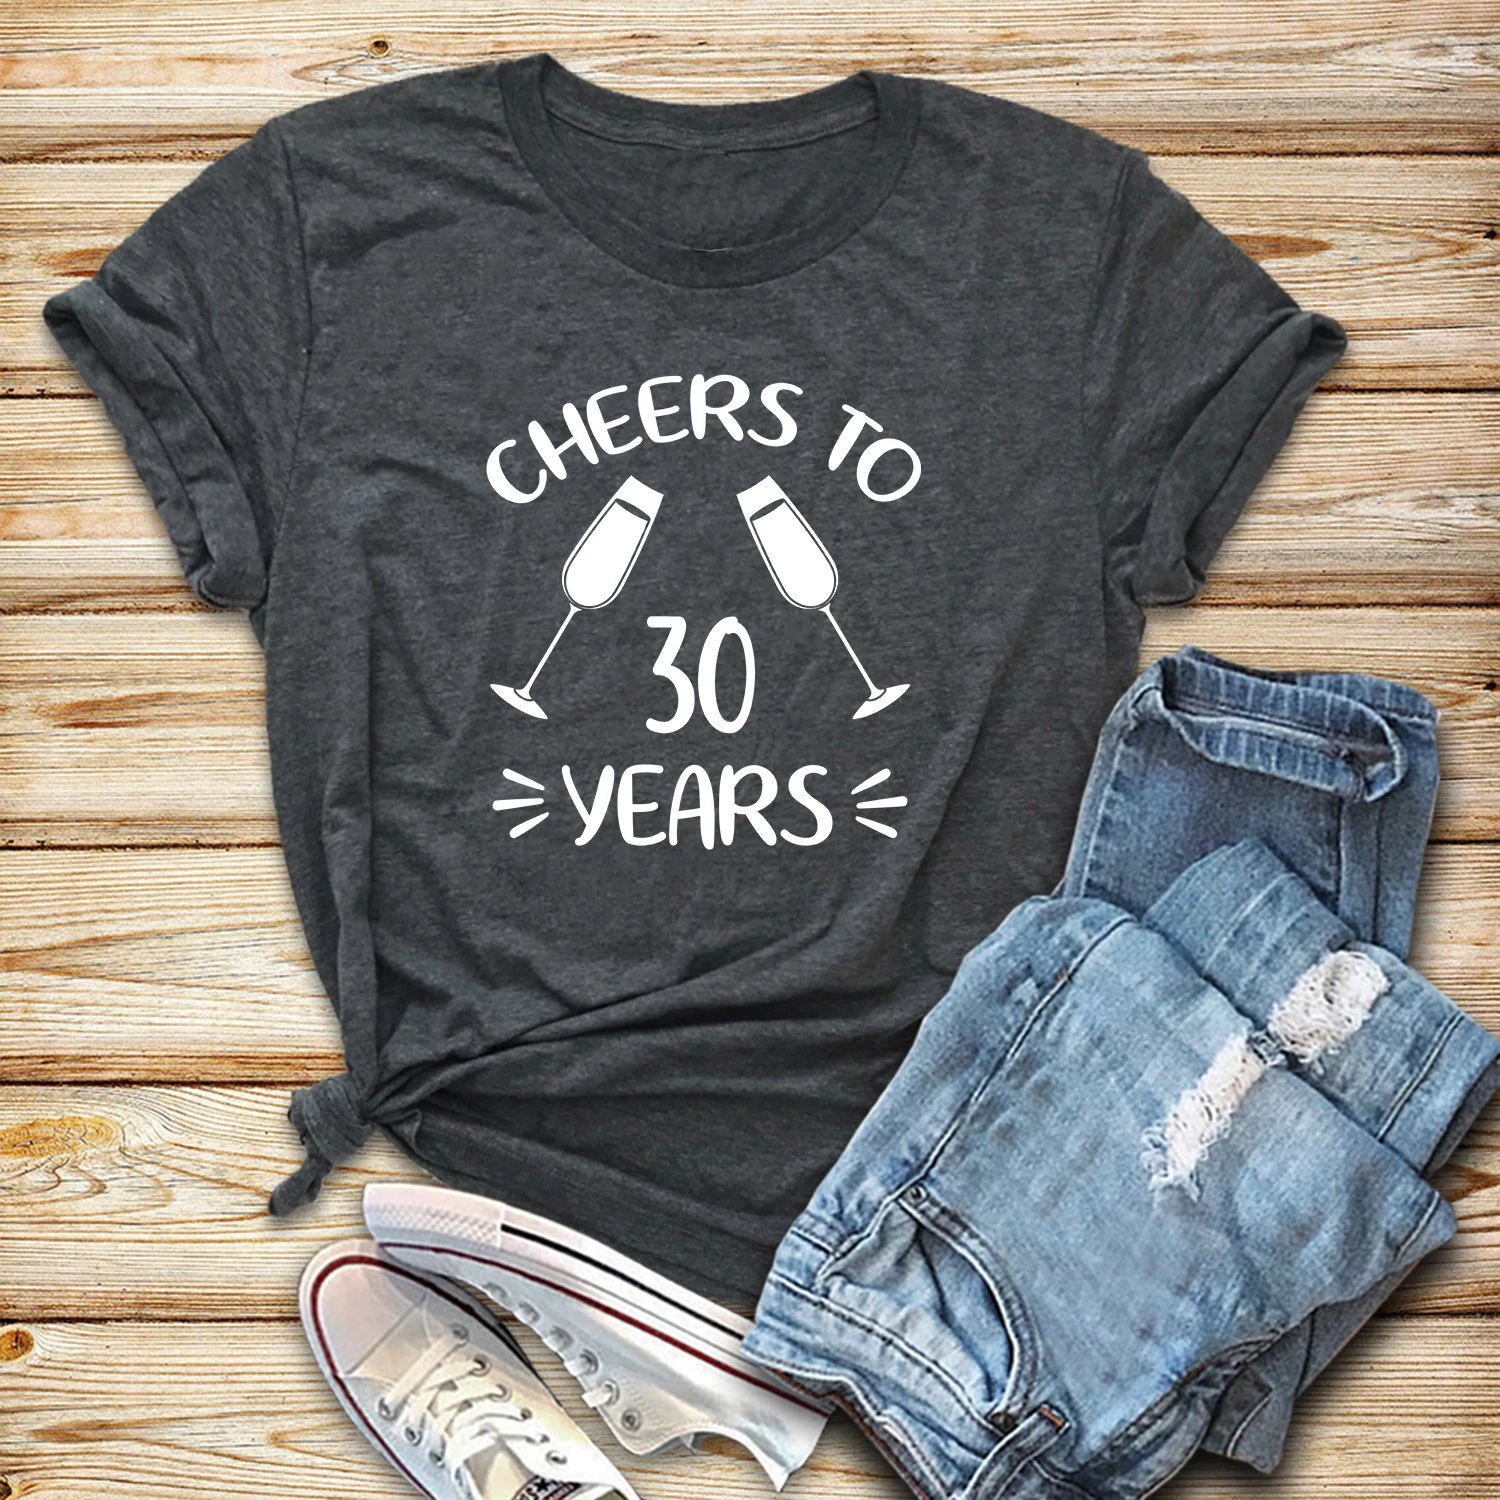 Фото Подарок на день рождения для женщин от 30 лет подарок праздничная футболка дружбы